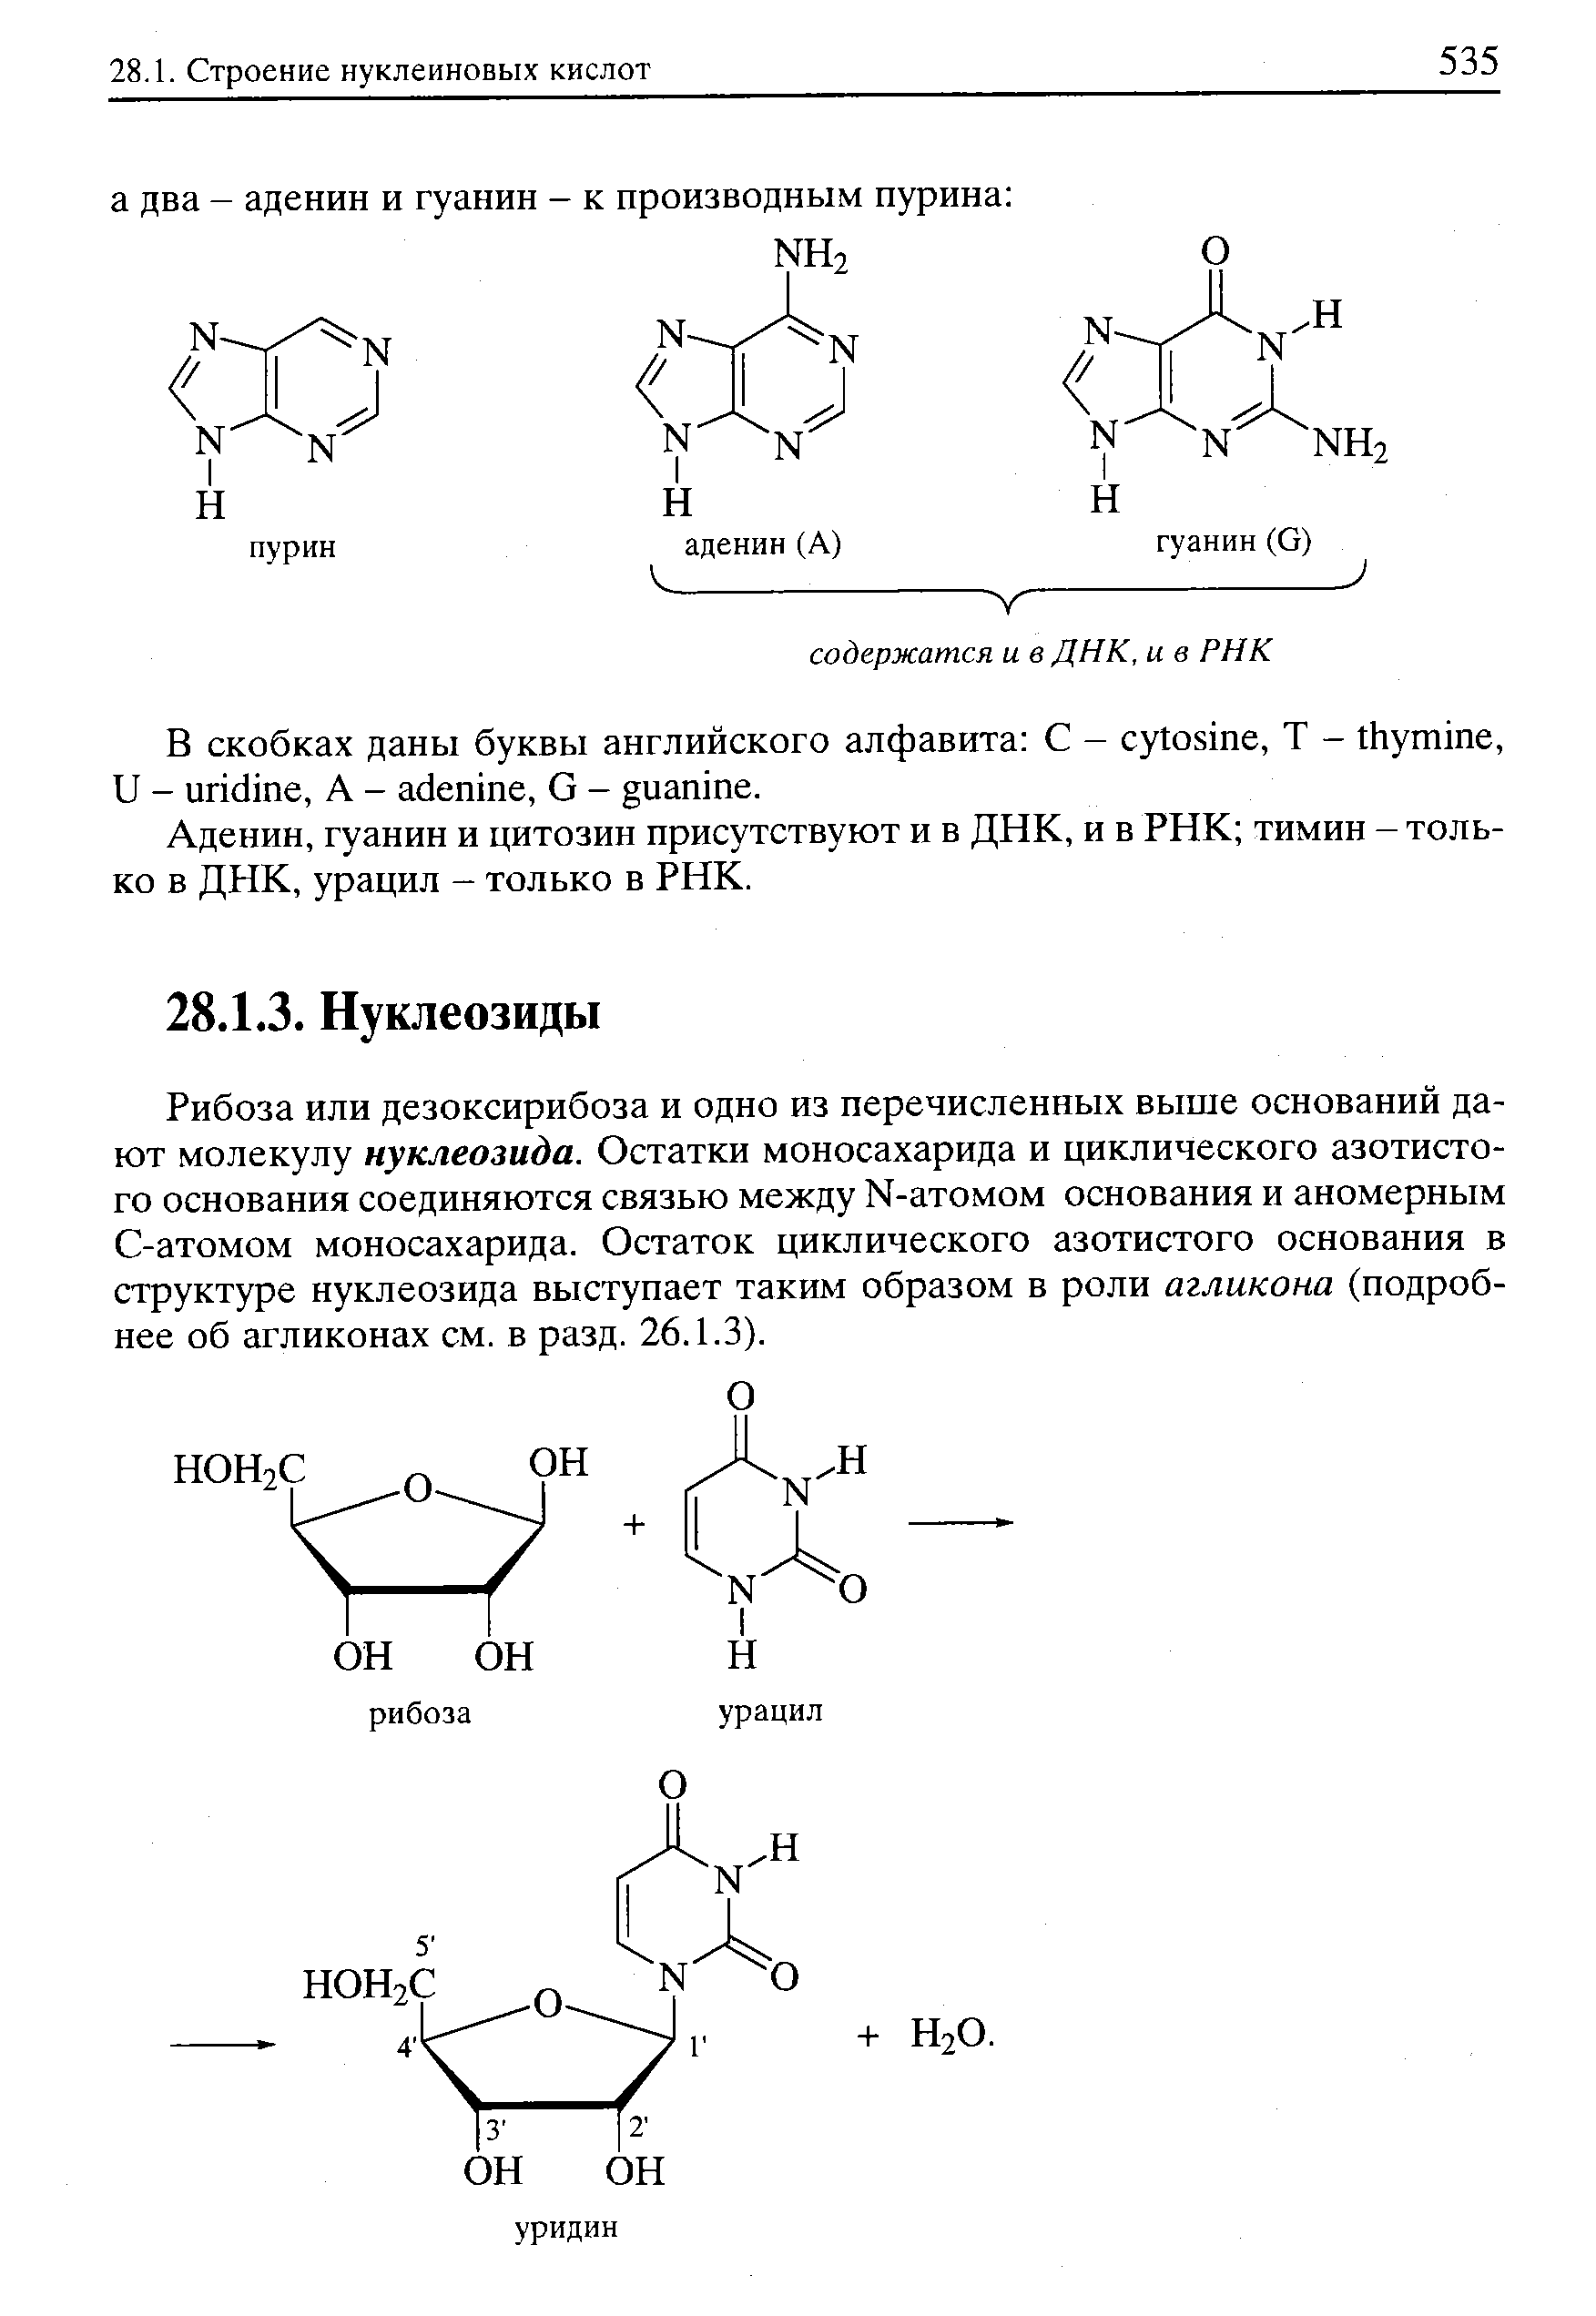 Рибоза или дезоксирибоза и одно из перечисленных выше оснований дают молекулу нуклеозида. Остатки моносахарида и циклического азотистого основания соединяются связью между М-атомом основания и аномерным С-атомом моносахарида. Остаток циклического азотистого основания в структуре нуклеозида выступает таким образом в роли агликона (подробнее об агликонах см. в разд. 26.1.3).